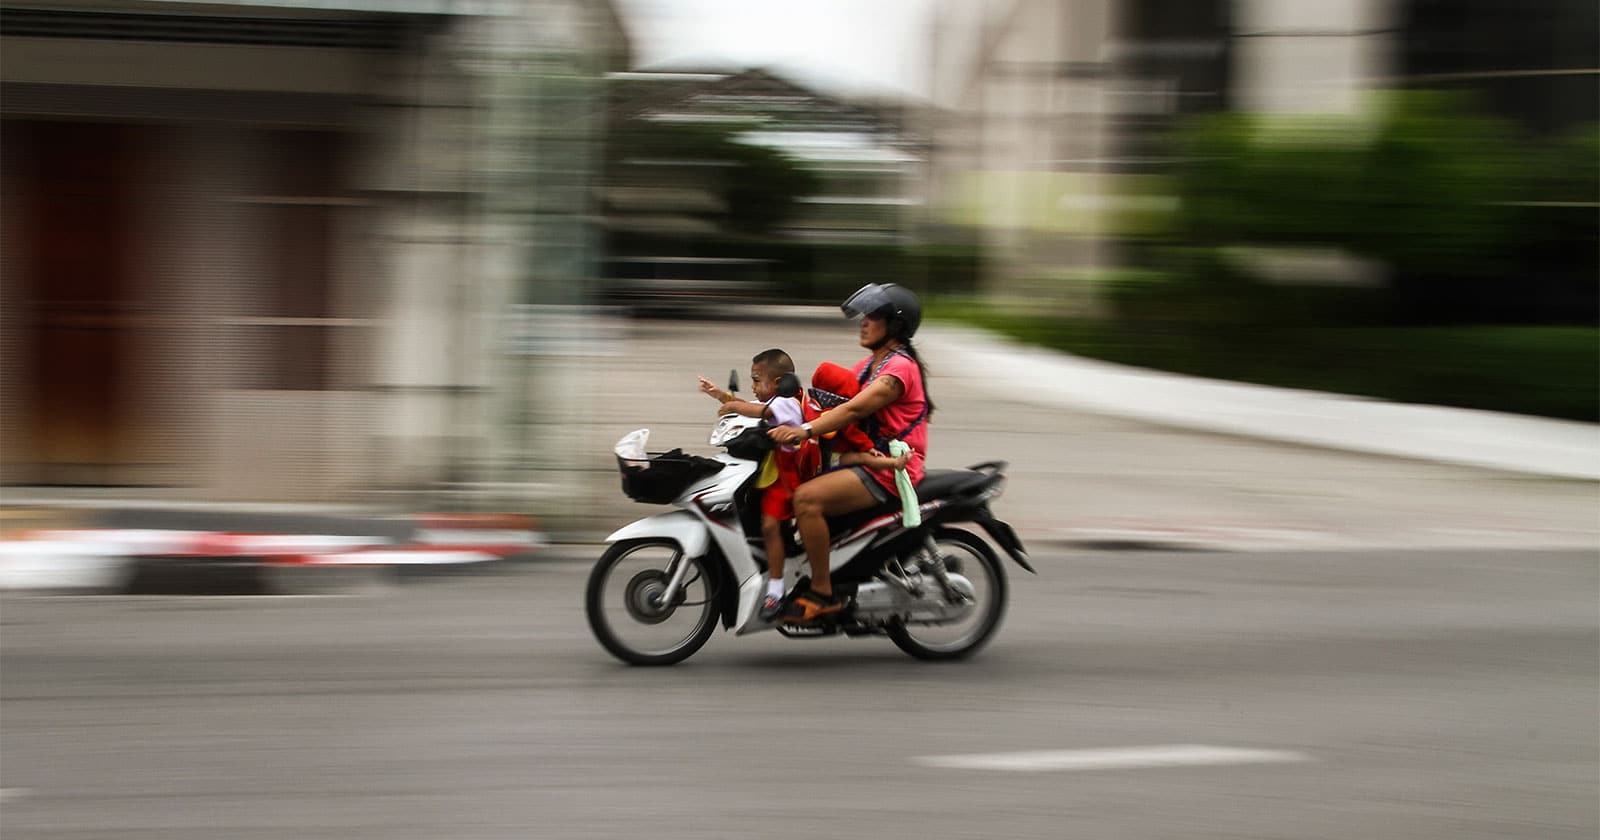 Regras e dicas importantes para transportar crianças em motos